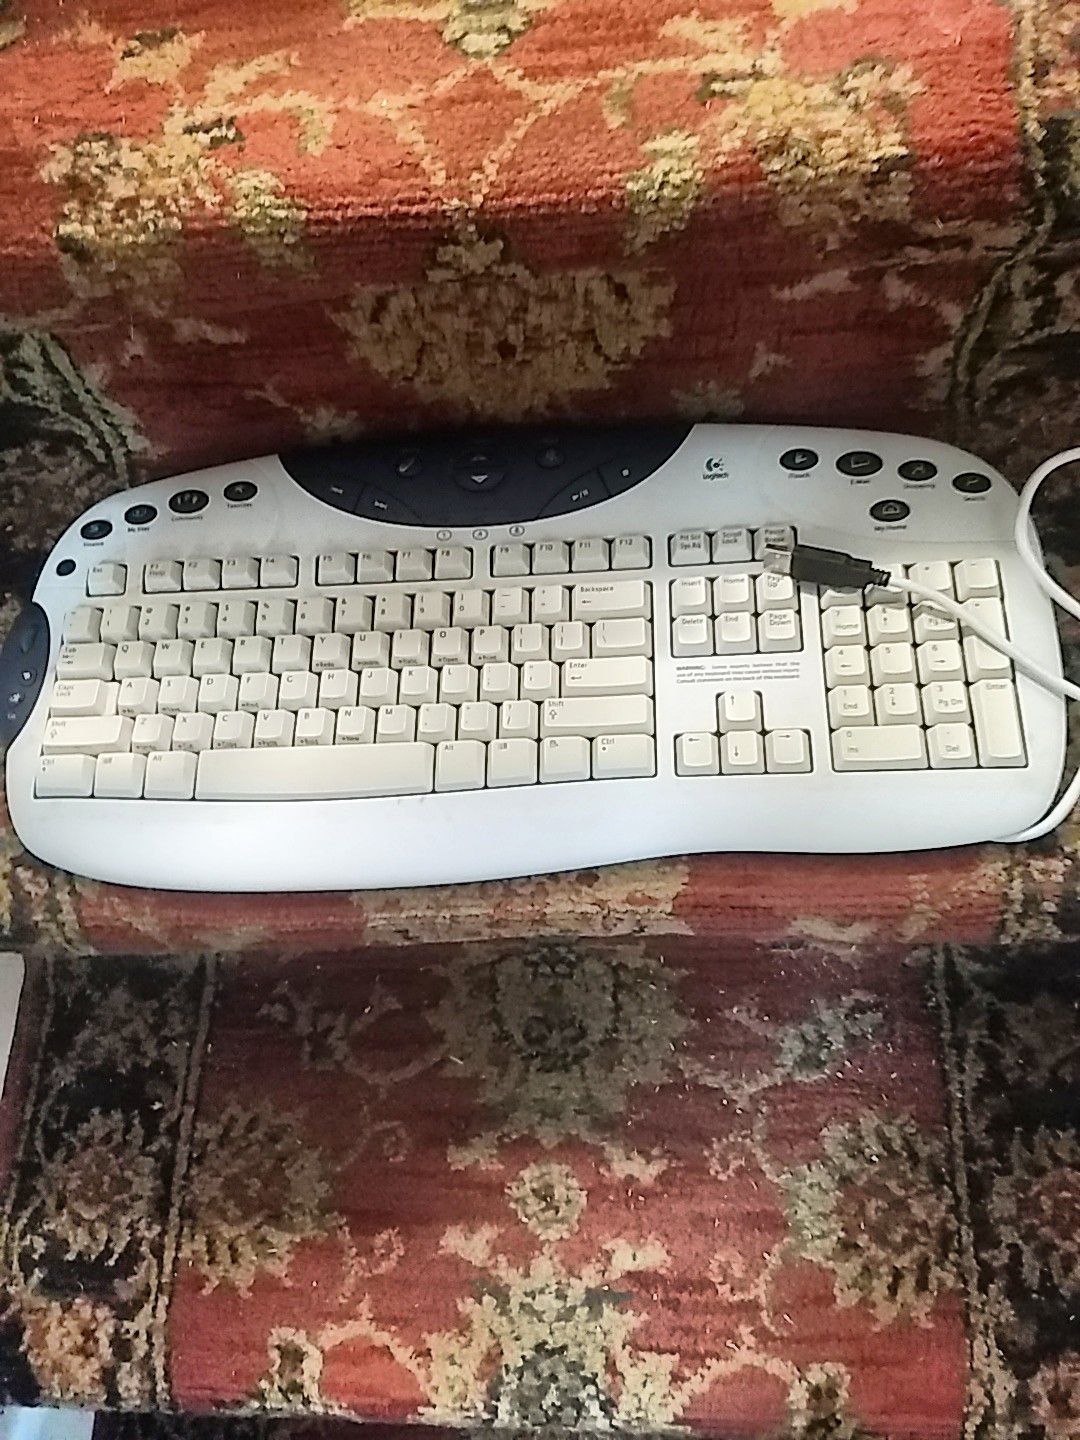 Logitech USB keyboard $5